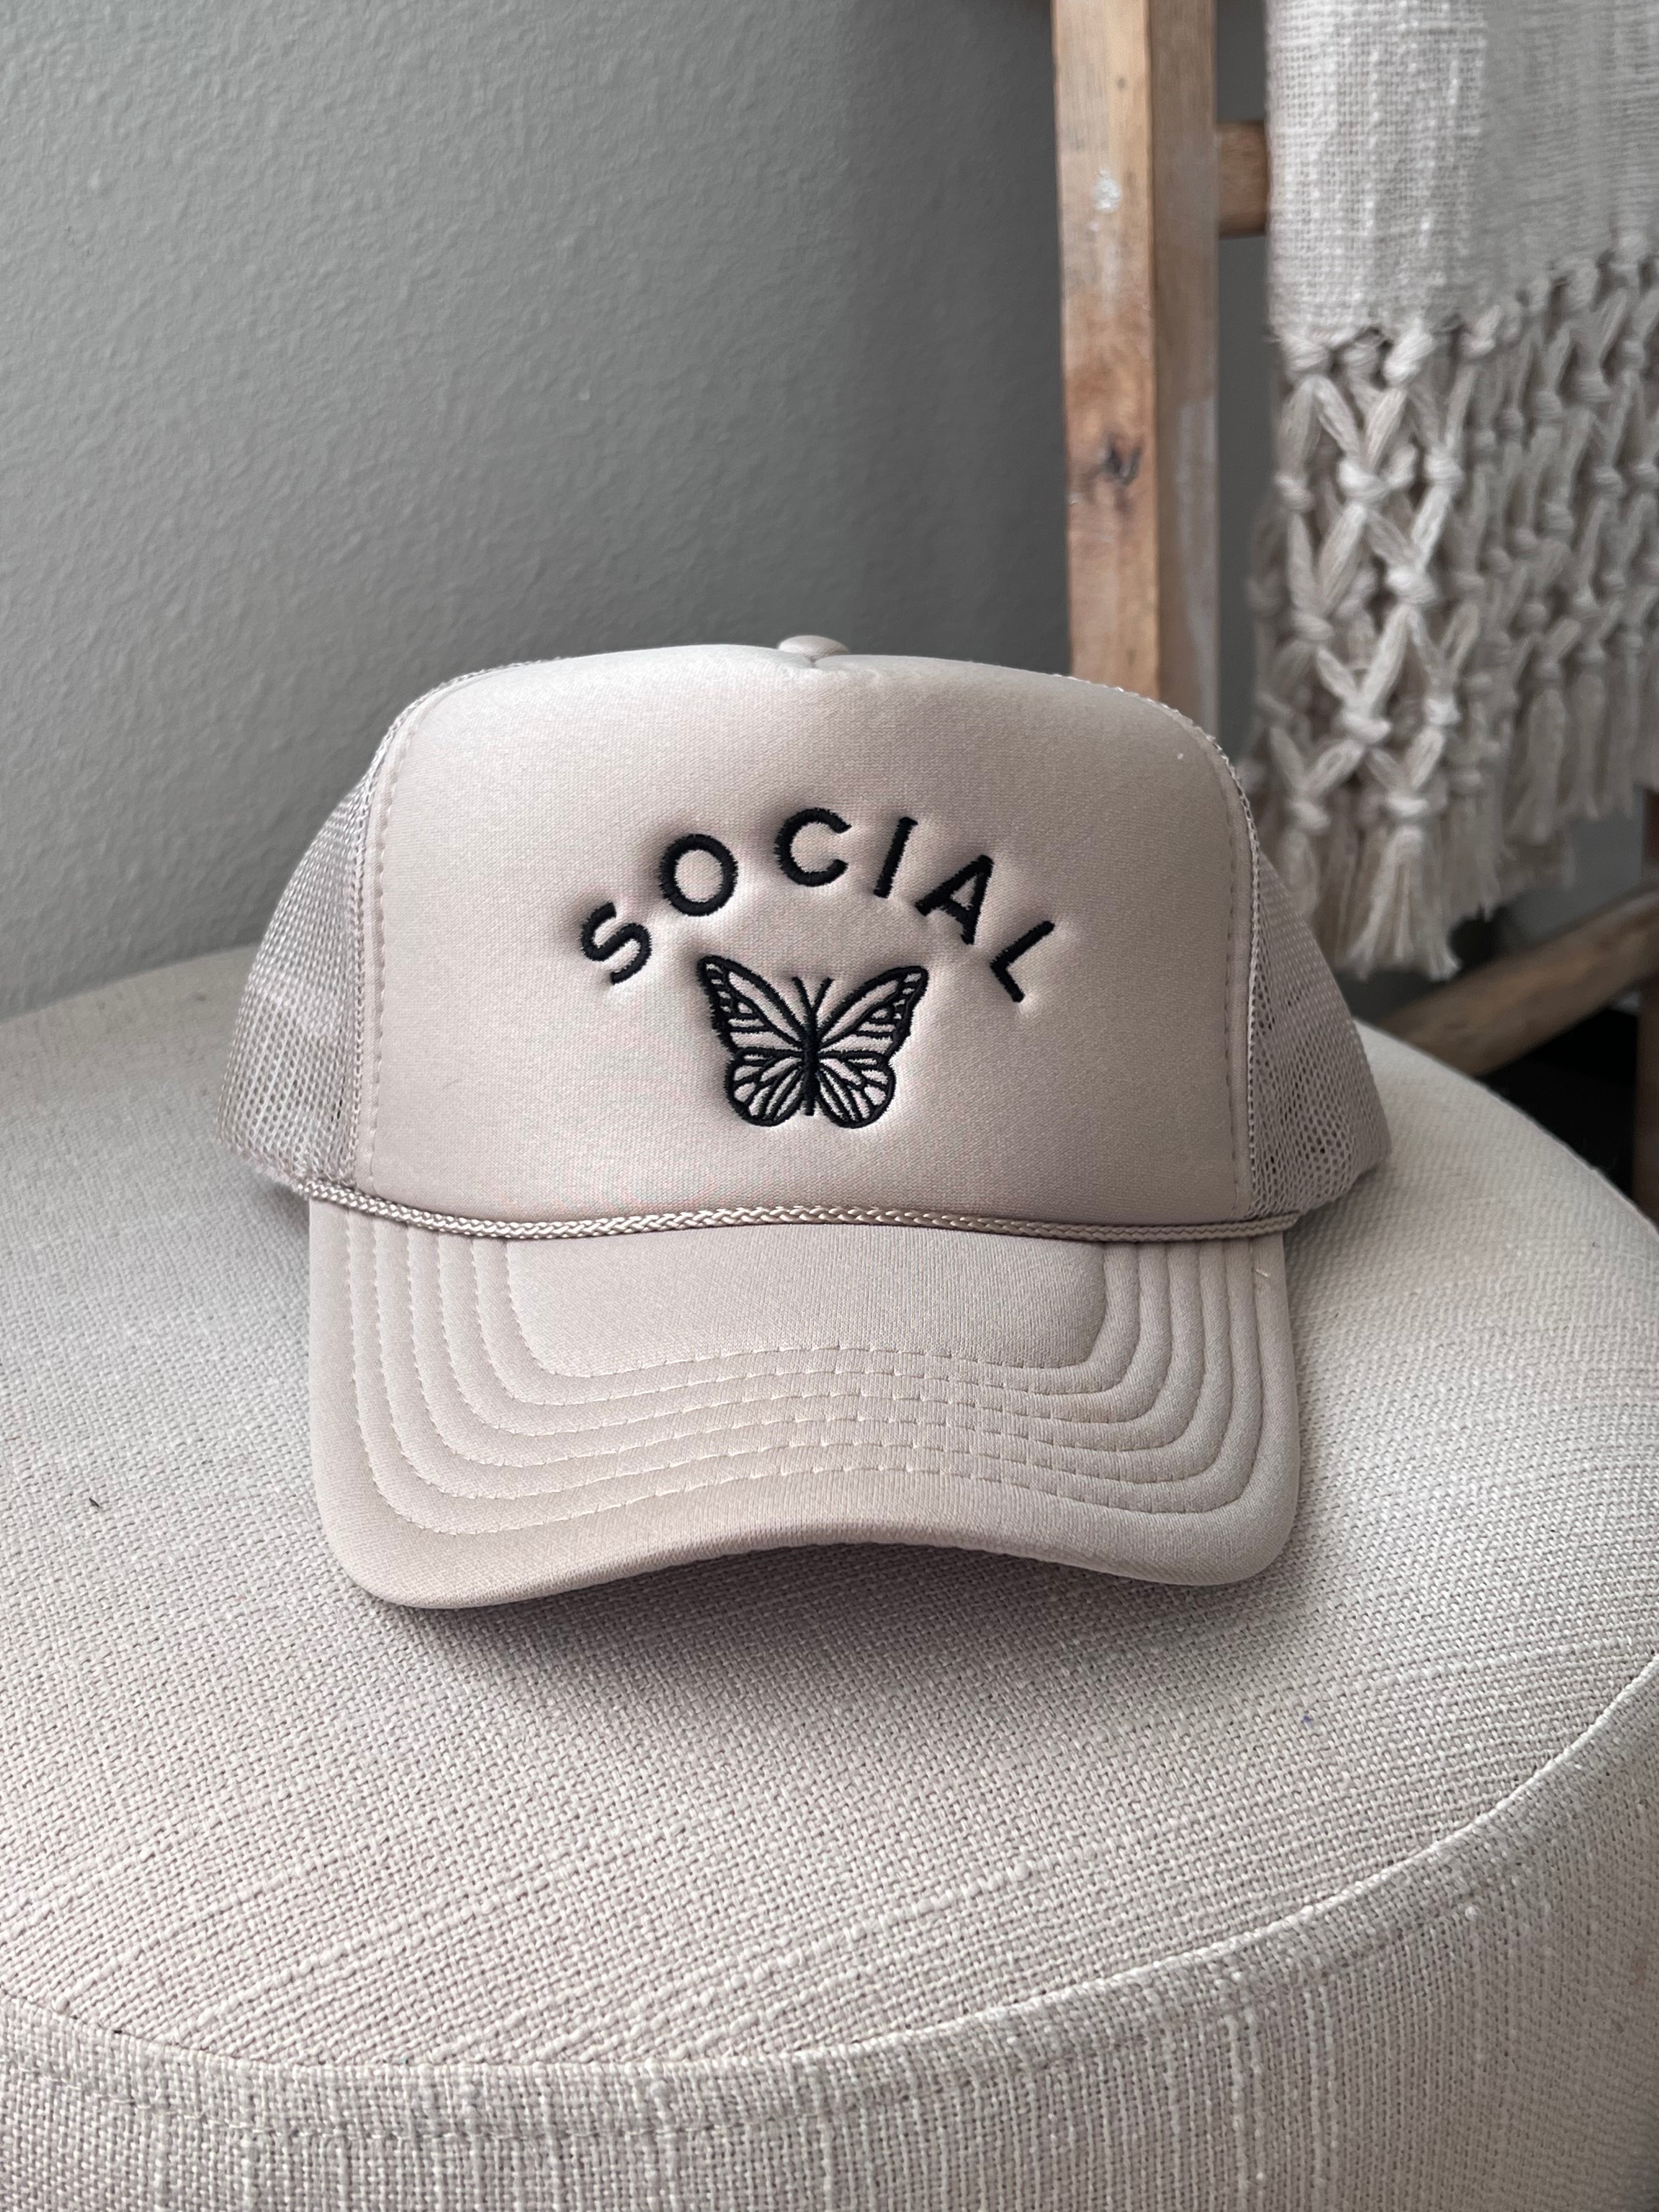 image of Social Butterfly Trucker Hat